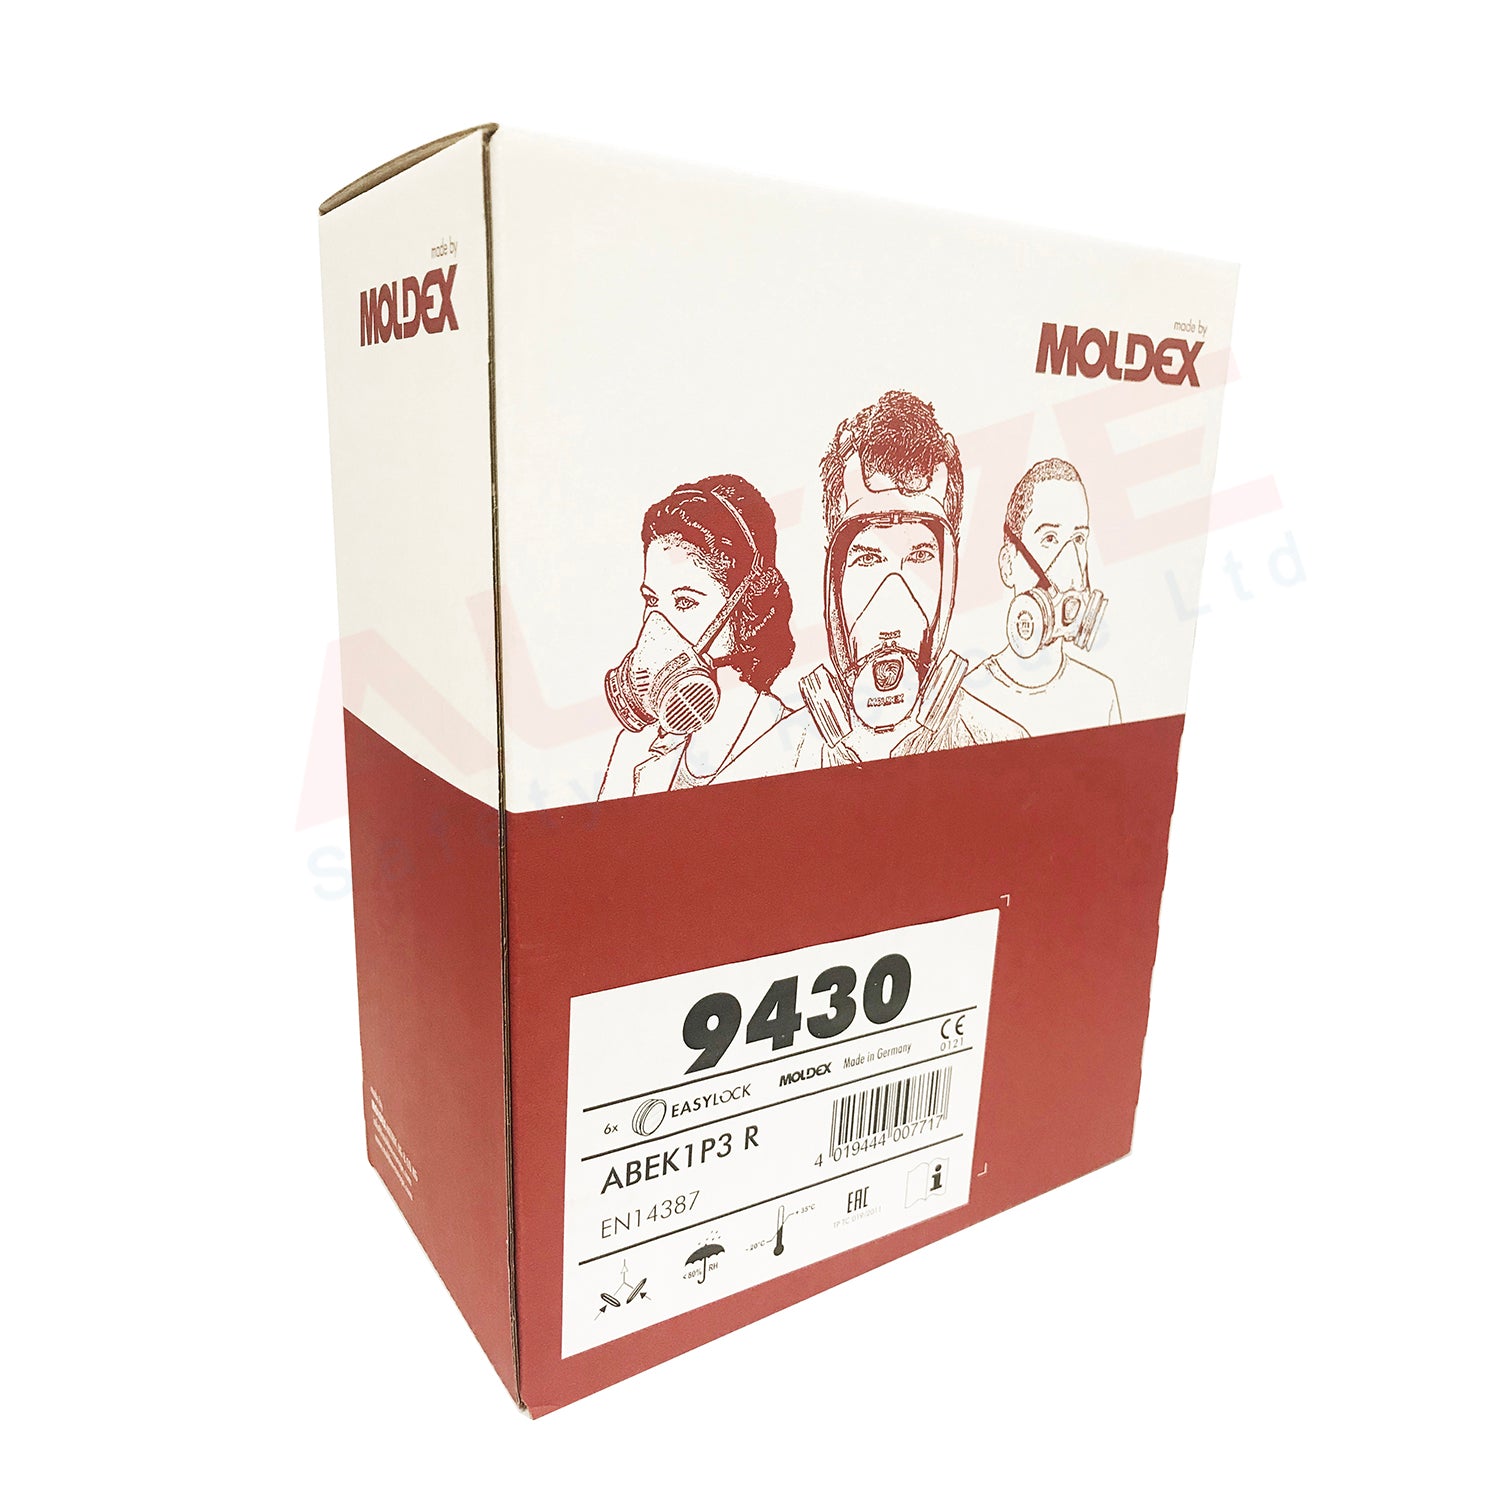 MOLDEX 9430 A1B1E1K1P3 R Pre-assembled Filters big box